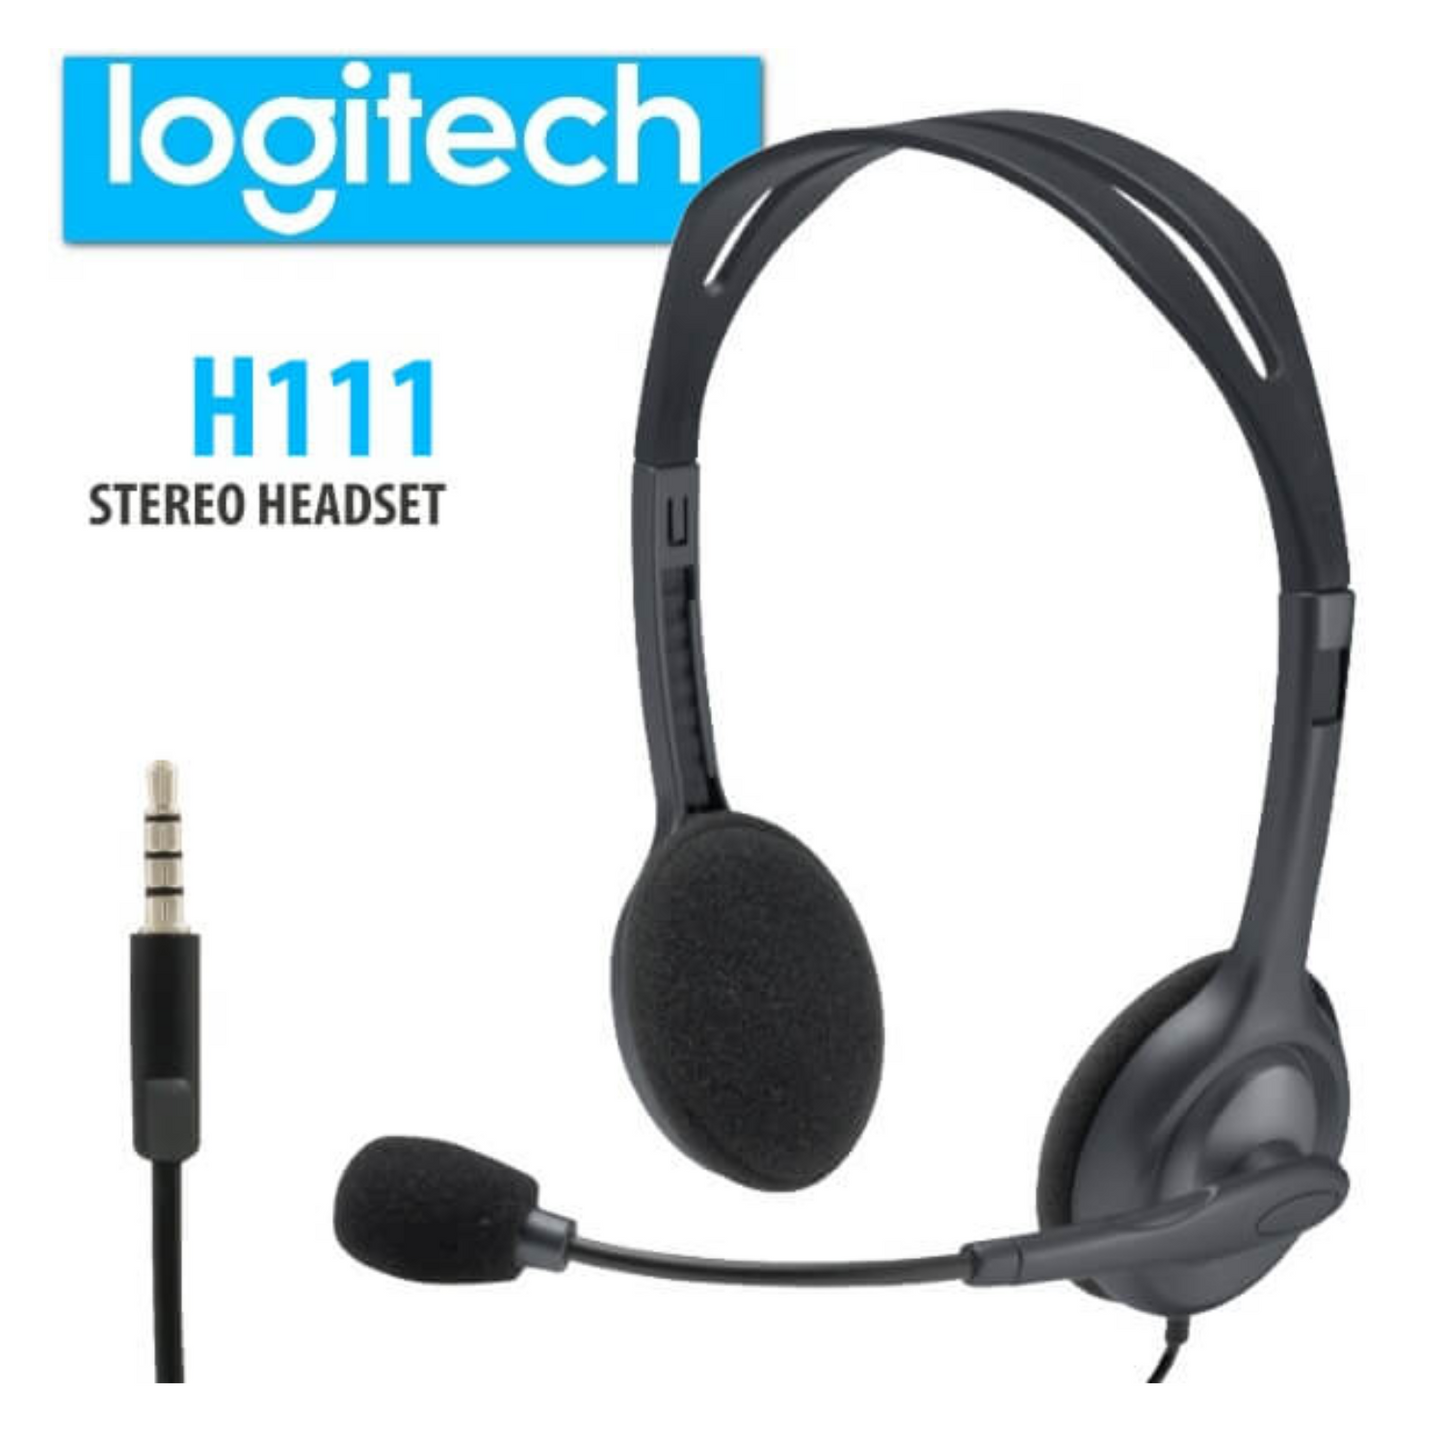 Logitech H111 Headset